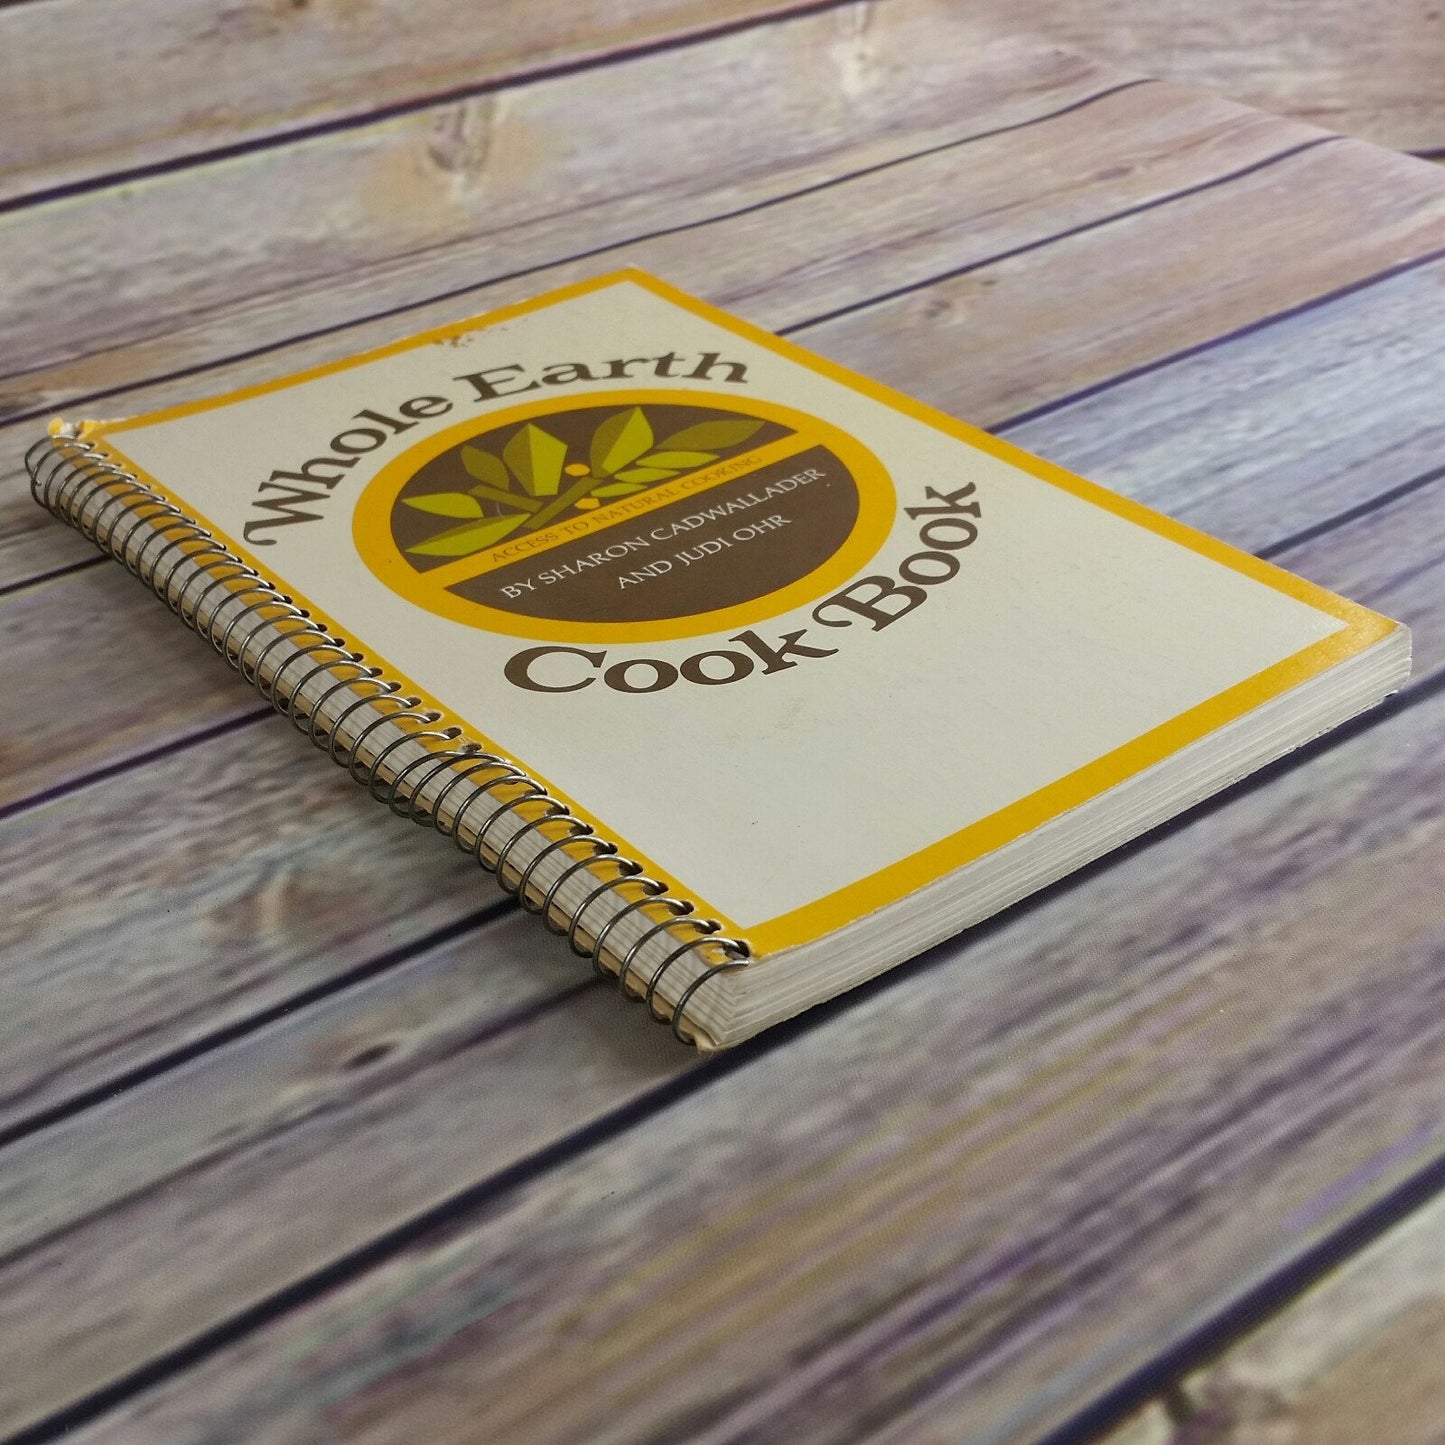 Vintage Cookbook Whole Earth Cook Book 1972 Natural Cooking Spiral Bound Sharon Cadwallader Judi Ohr Santa Cruz Natural Foods Restaurant